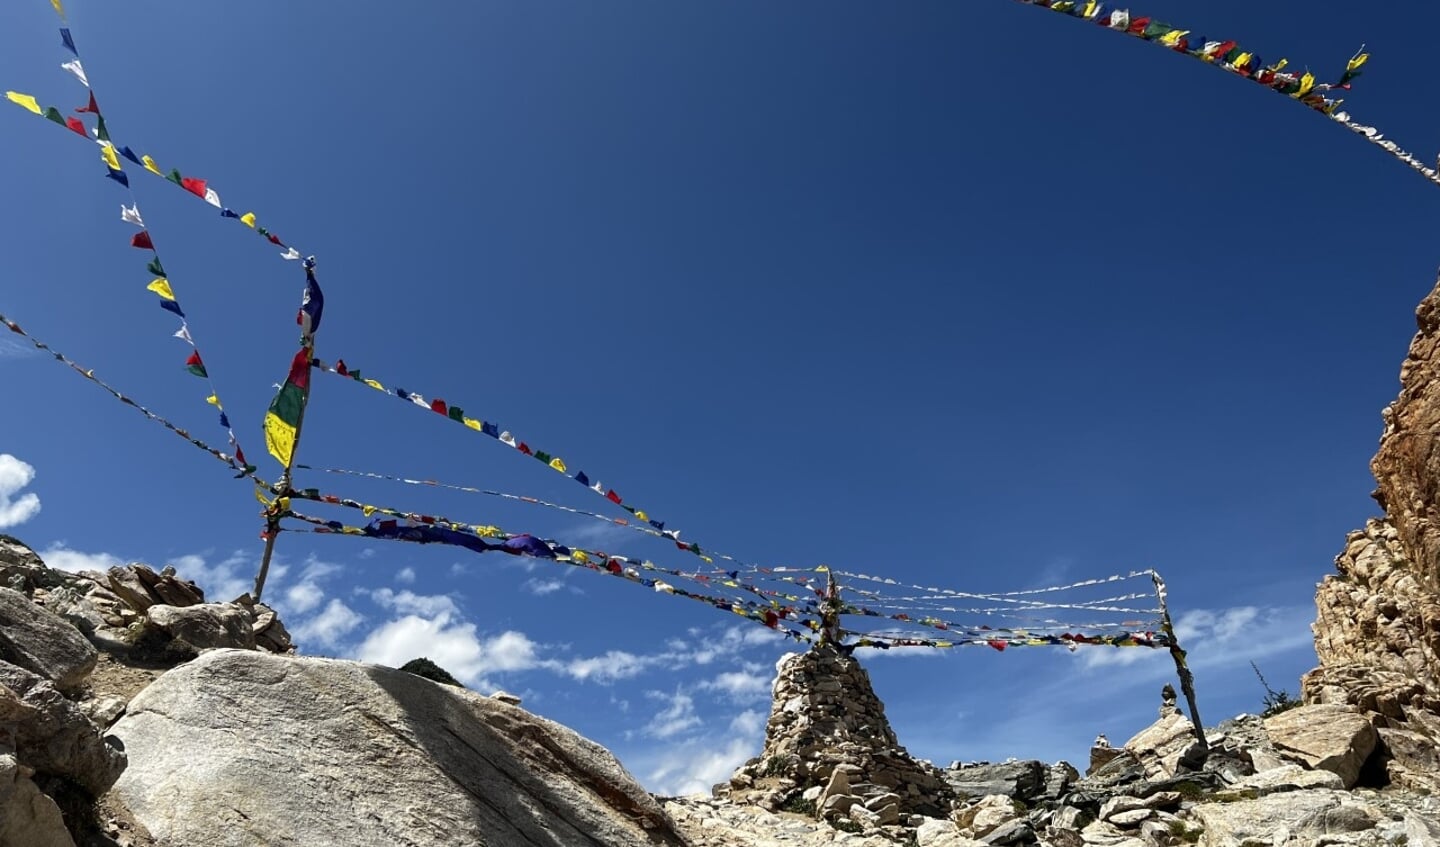 Ell van de Laar stuurde deze vakantiefoto in. De foto is gemaakt in de regio Ladakh in India. 